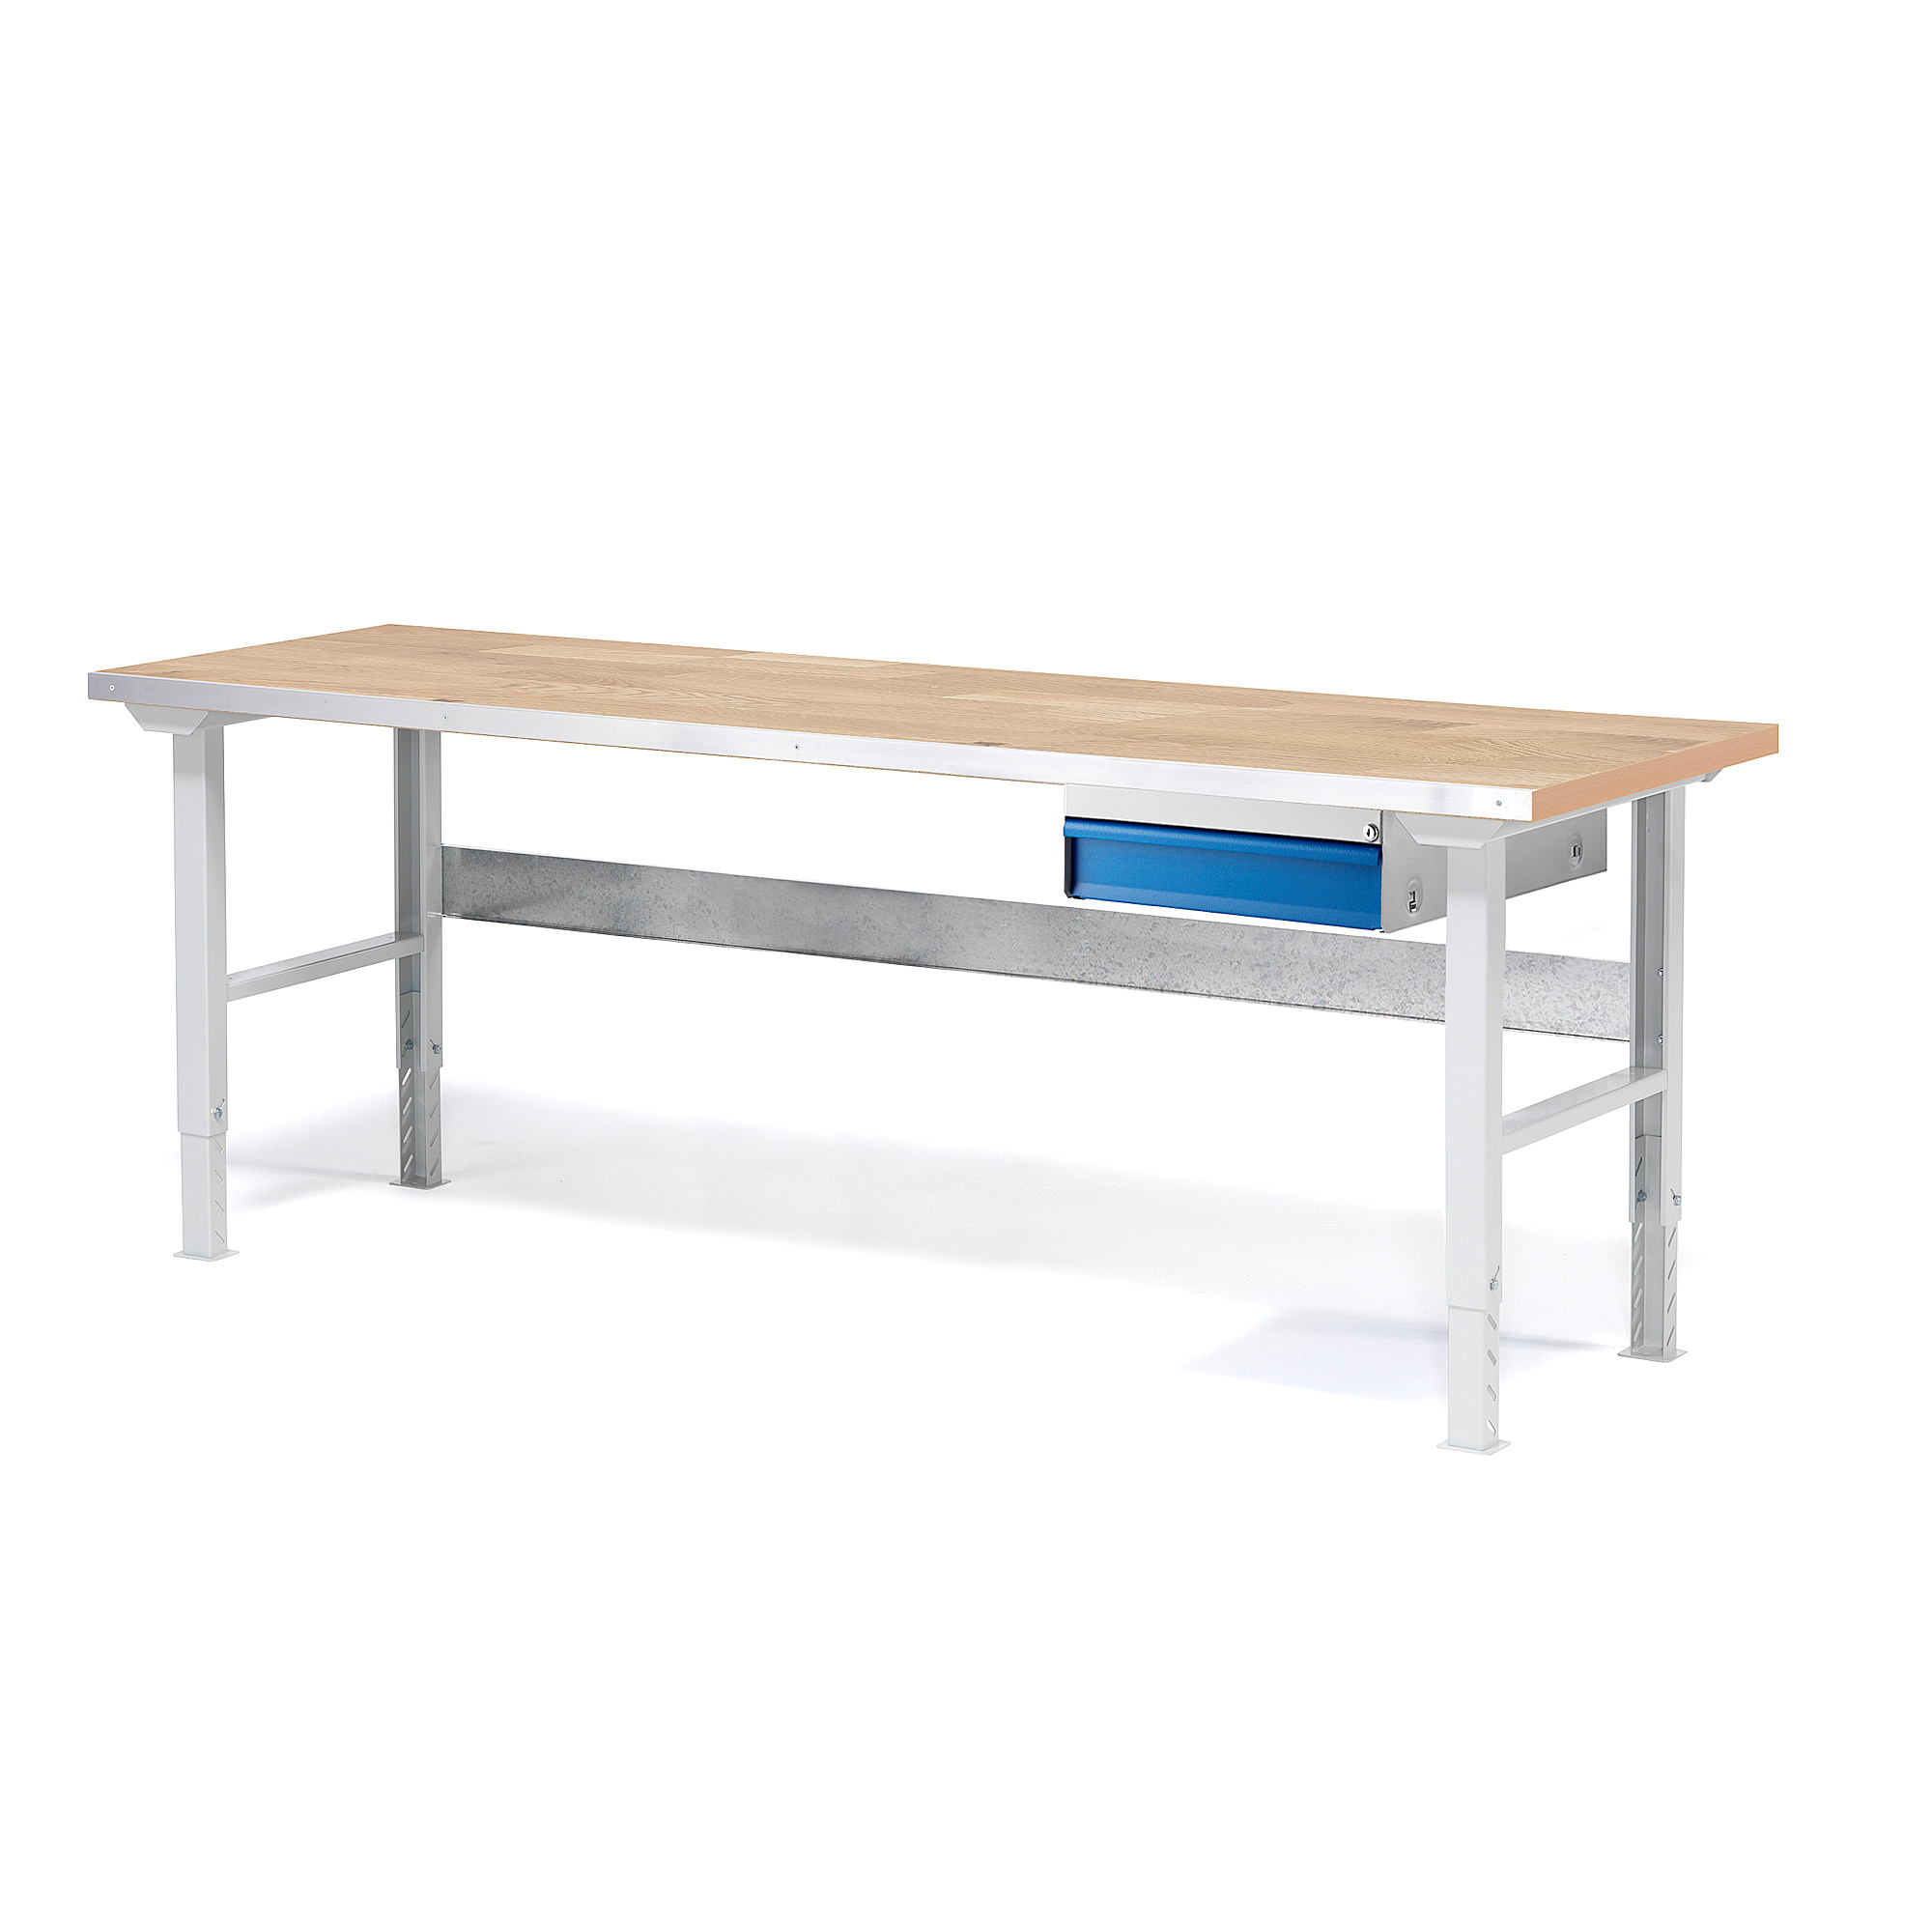 Dílenský stůl SOLID, 2000x800 mm, nosnost 750 kg, 1 zásuvka, dubový povrch